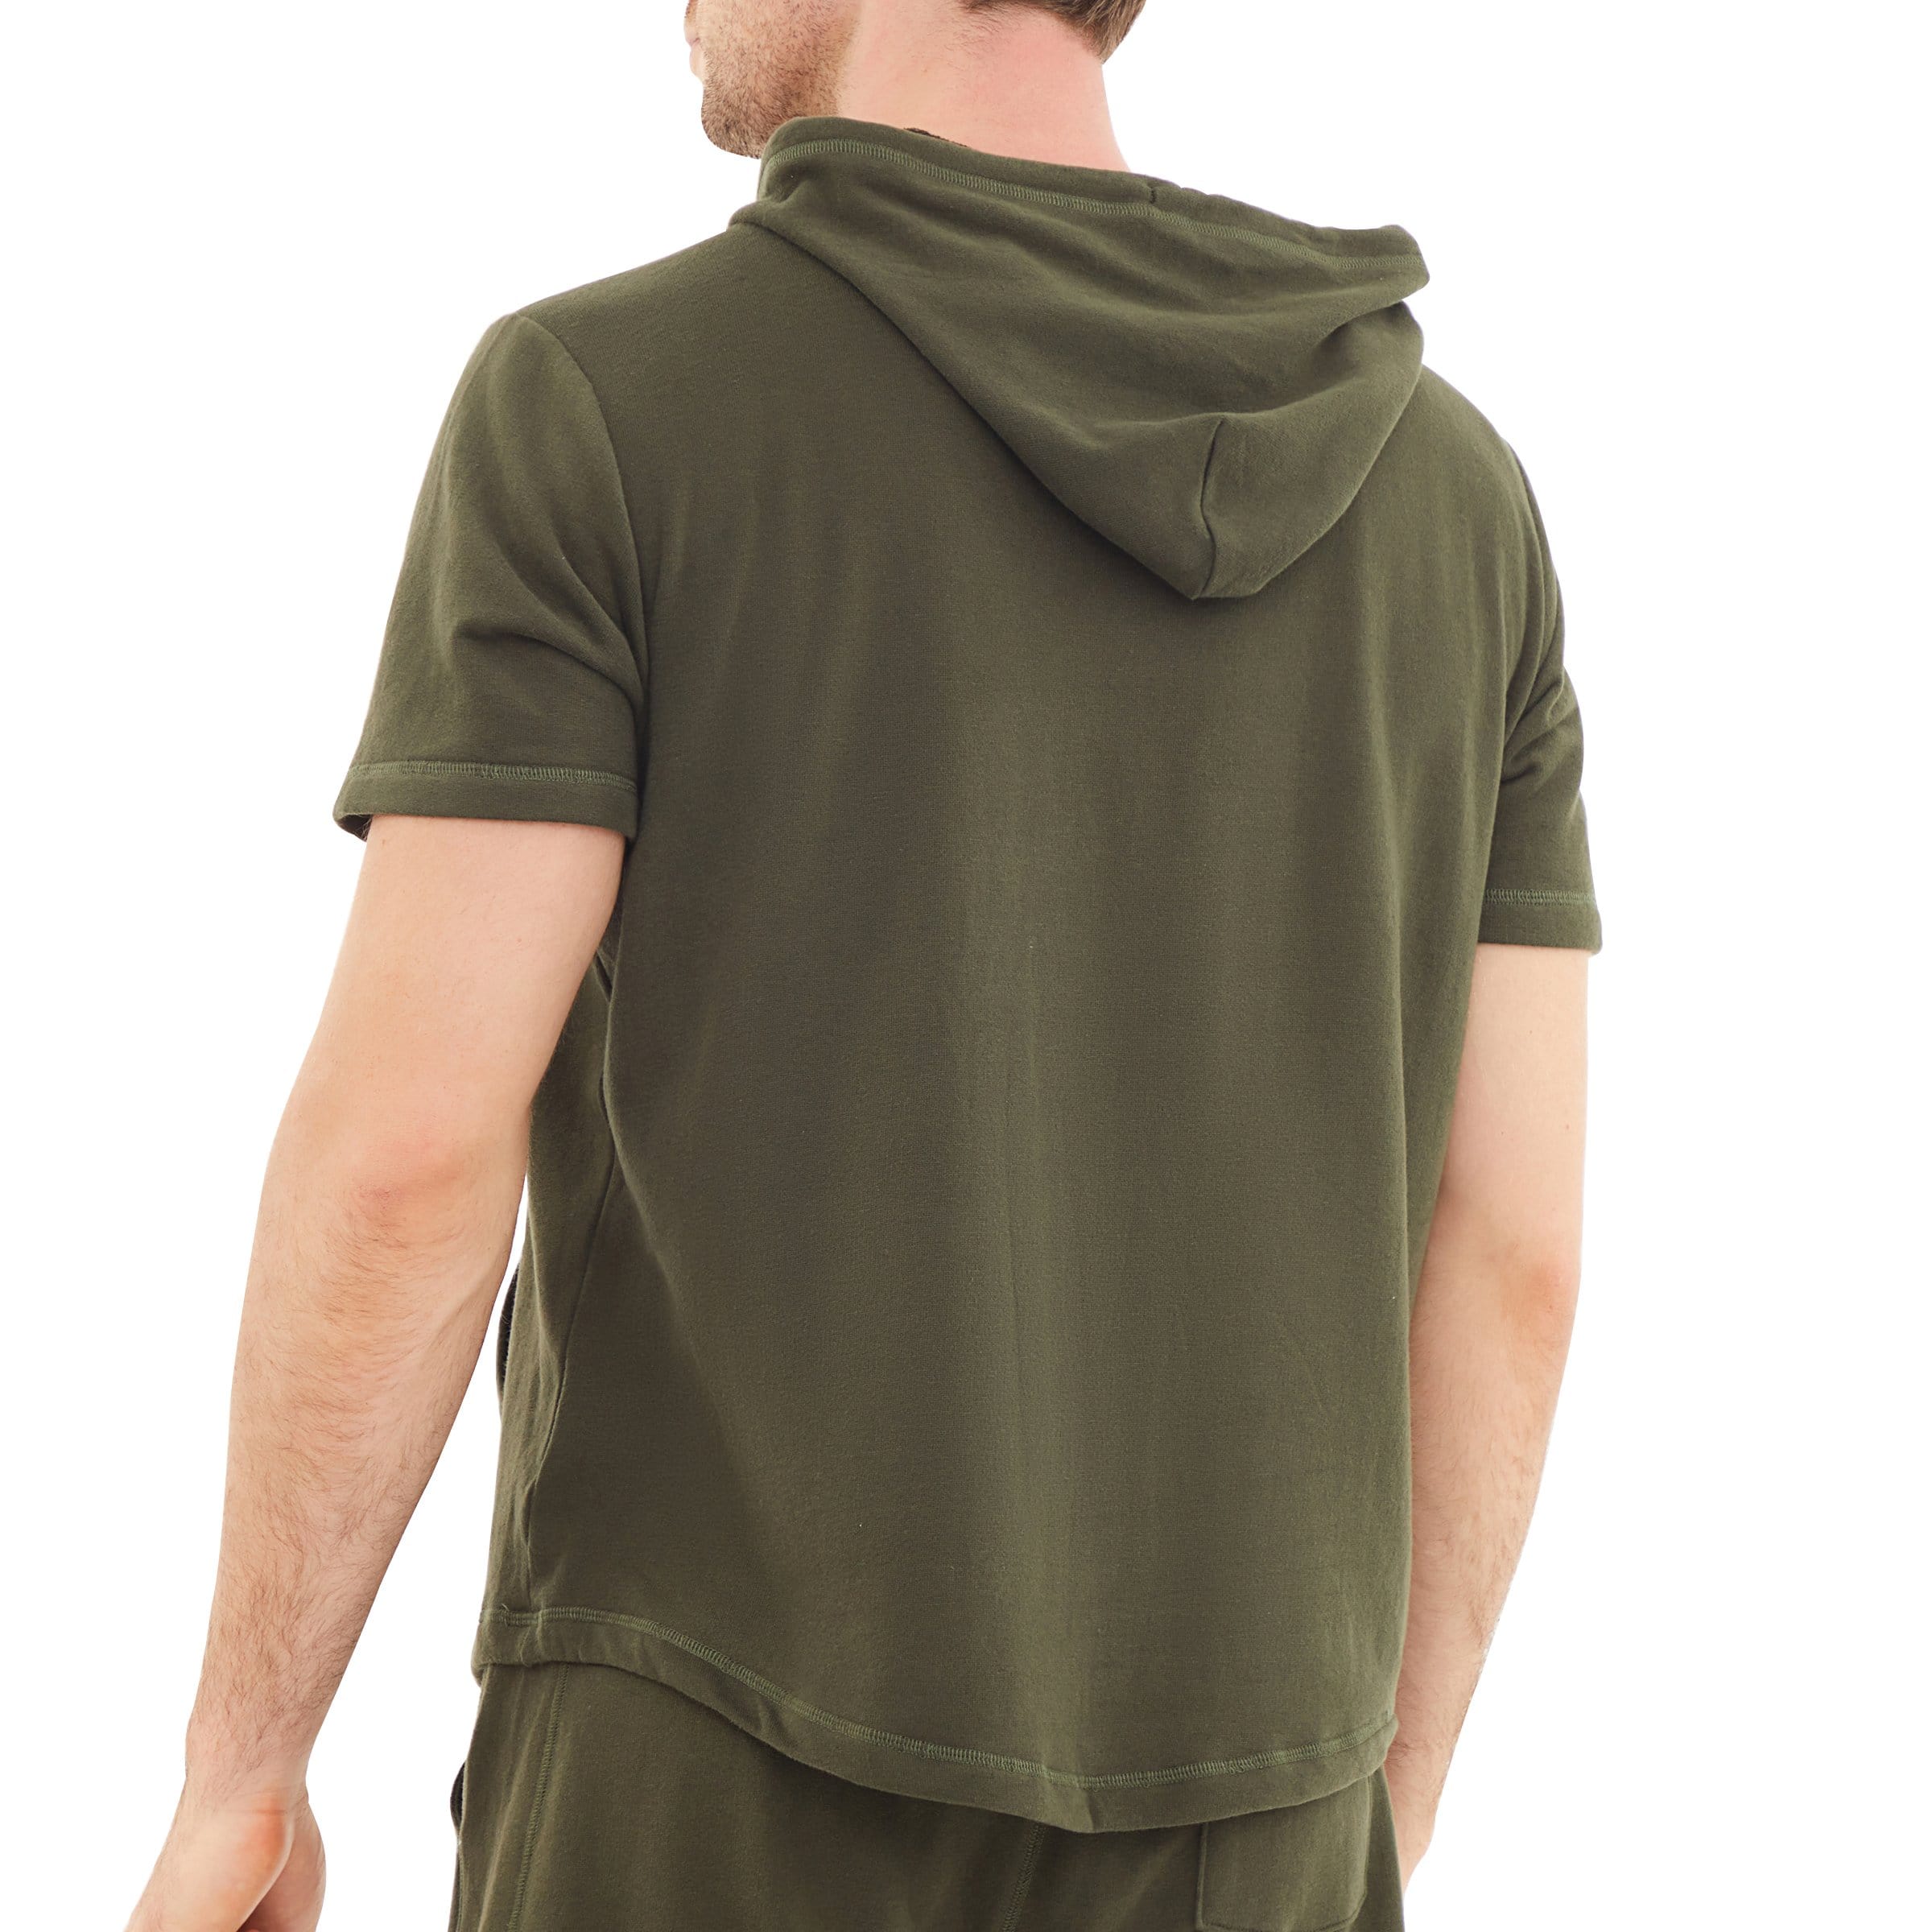 Men's Hoodies short-sleeved hooded sweatshirt #0604